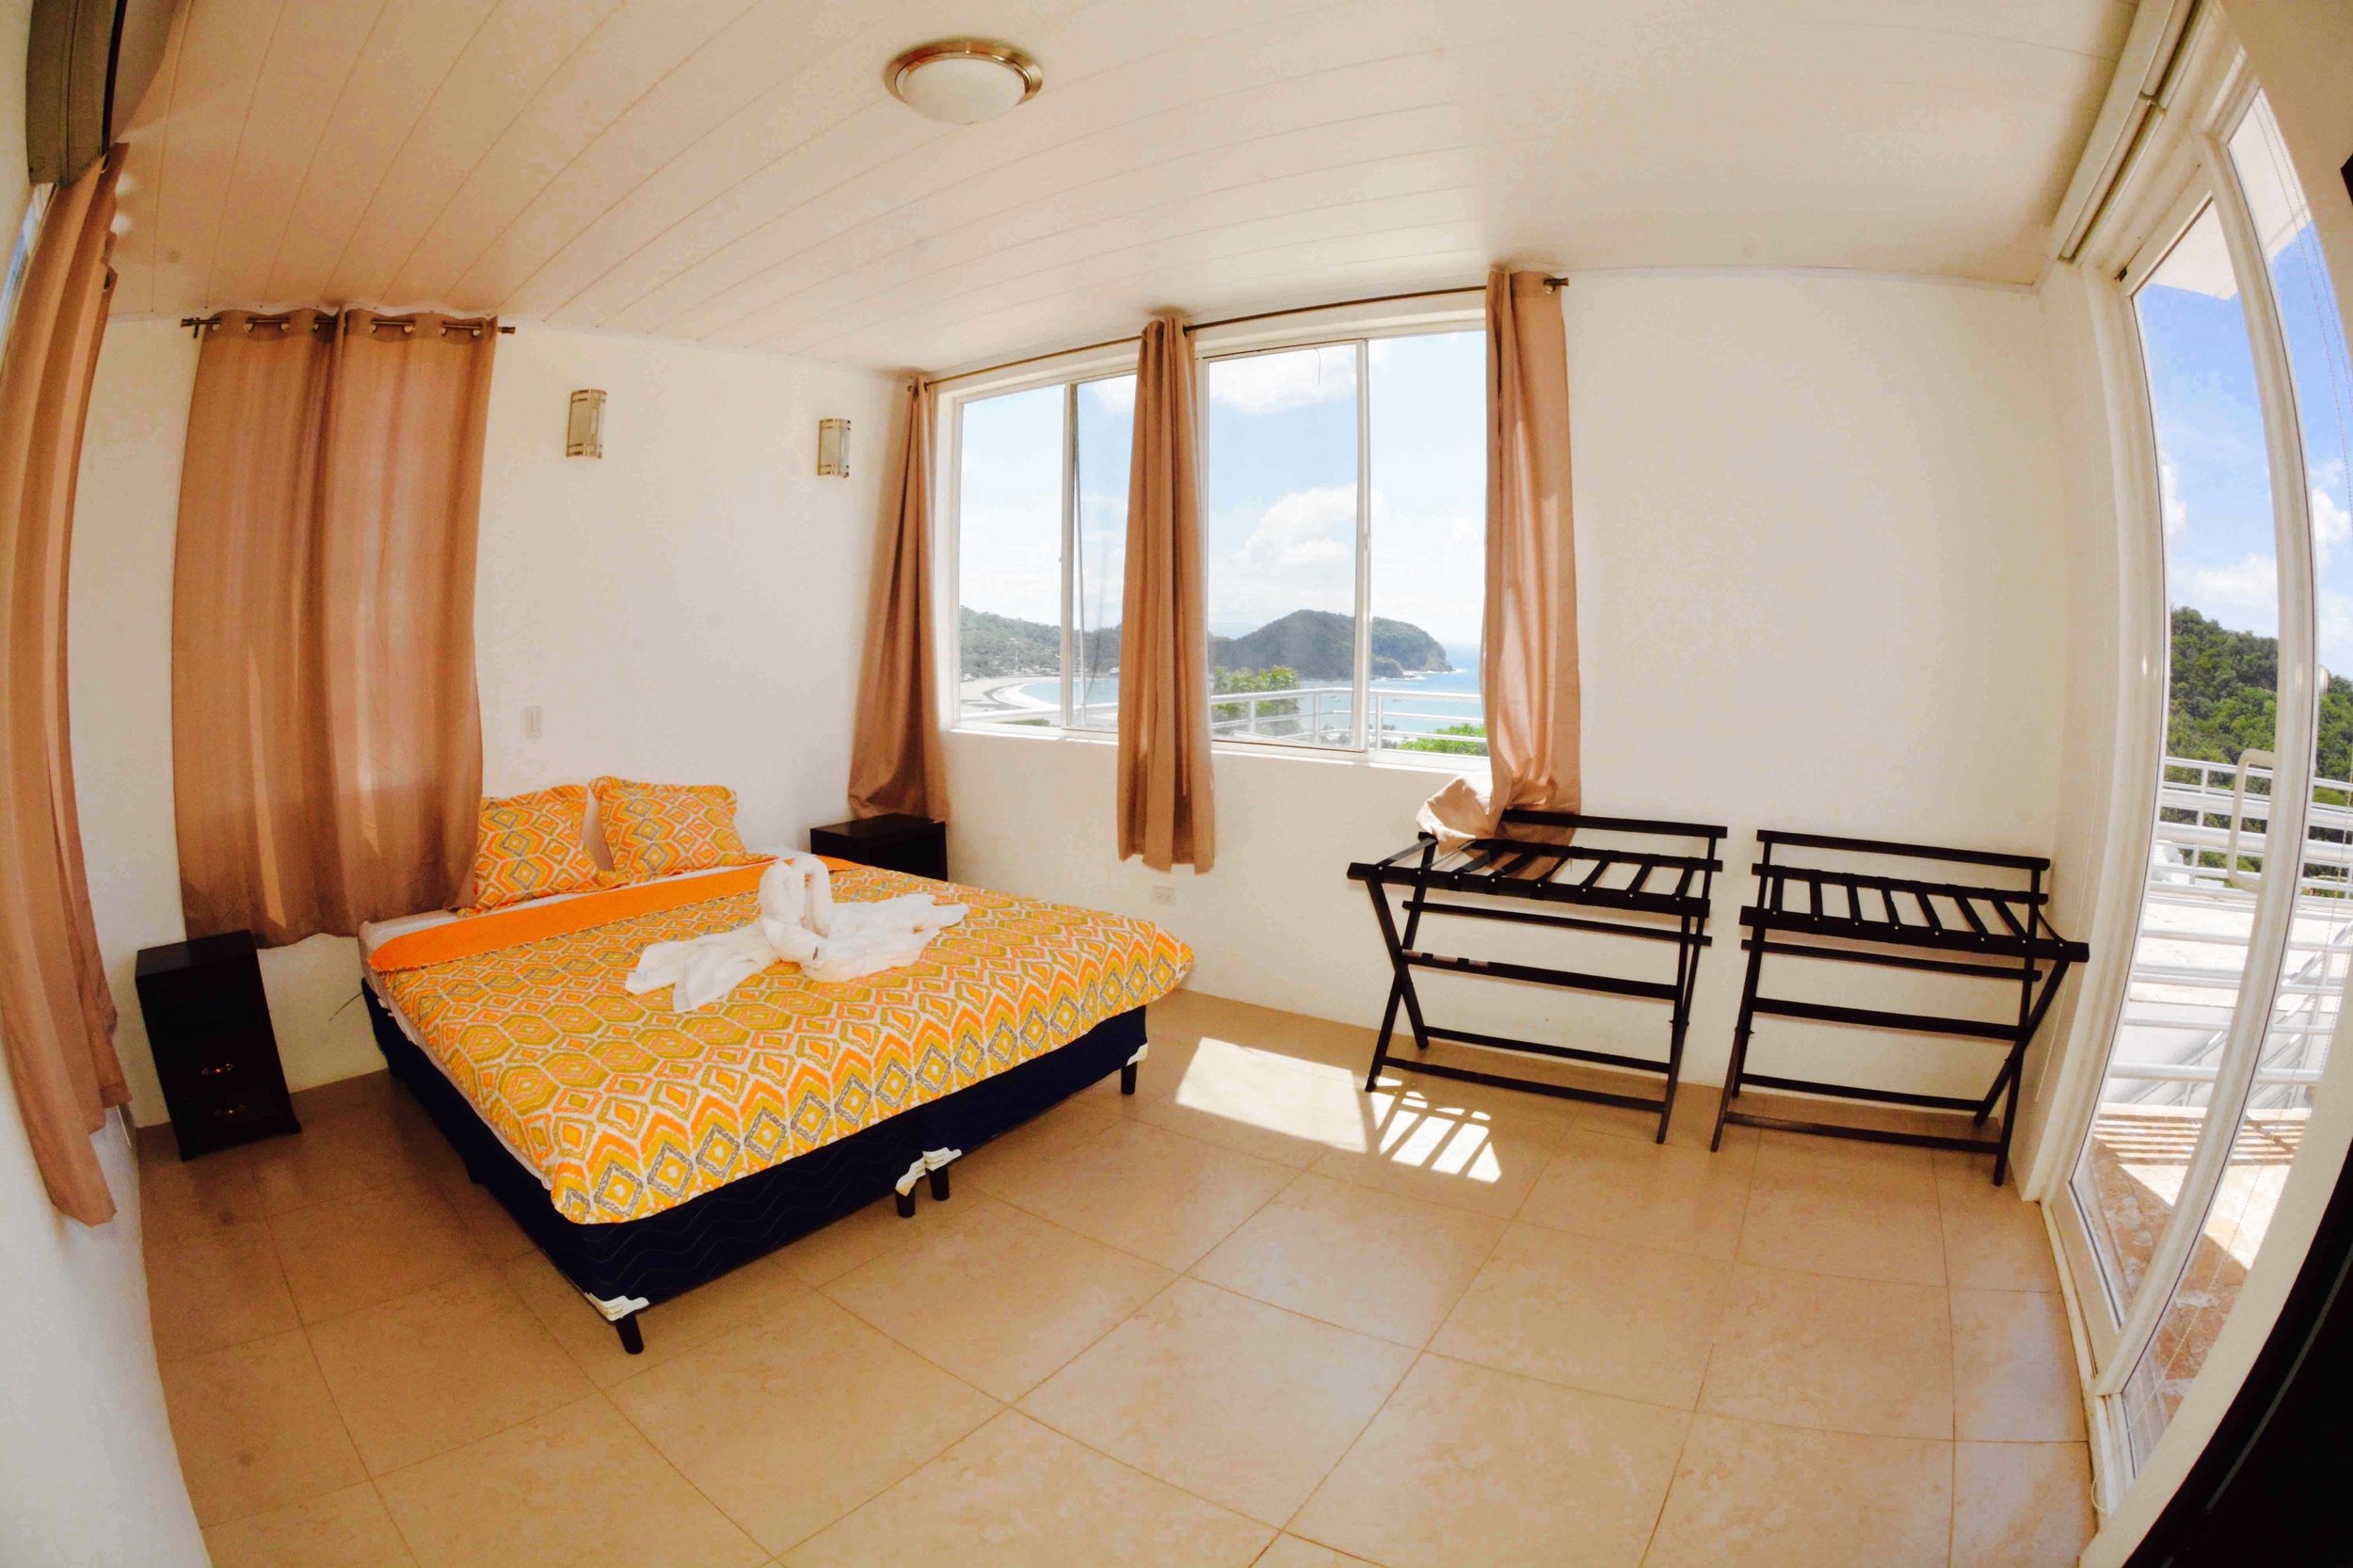 Eight Bedroom Home For Sale in Colinas De Miaramar San Juan Del Sur 9.jpg